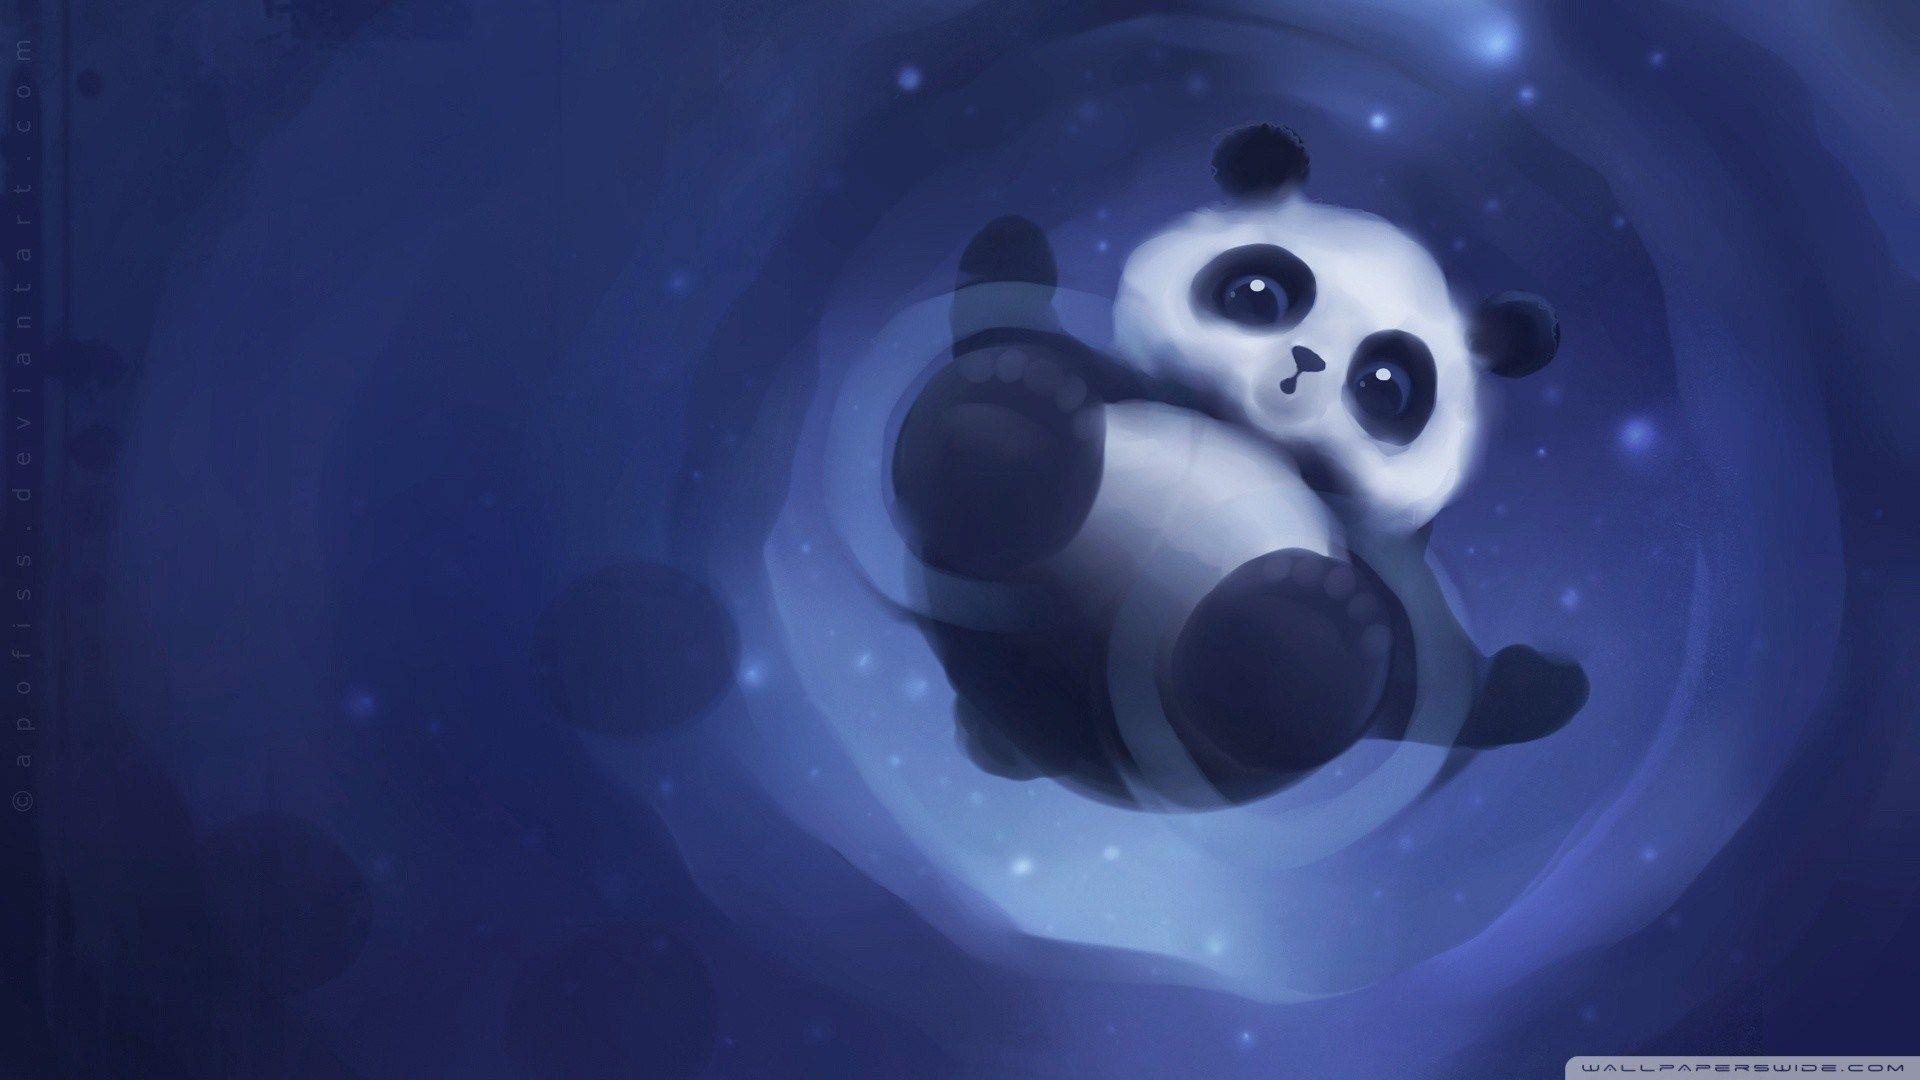 Cute Cartoon Panda Wallpapers - Wallpaper Cave